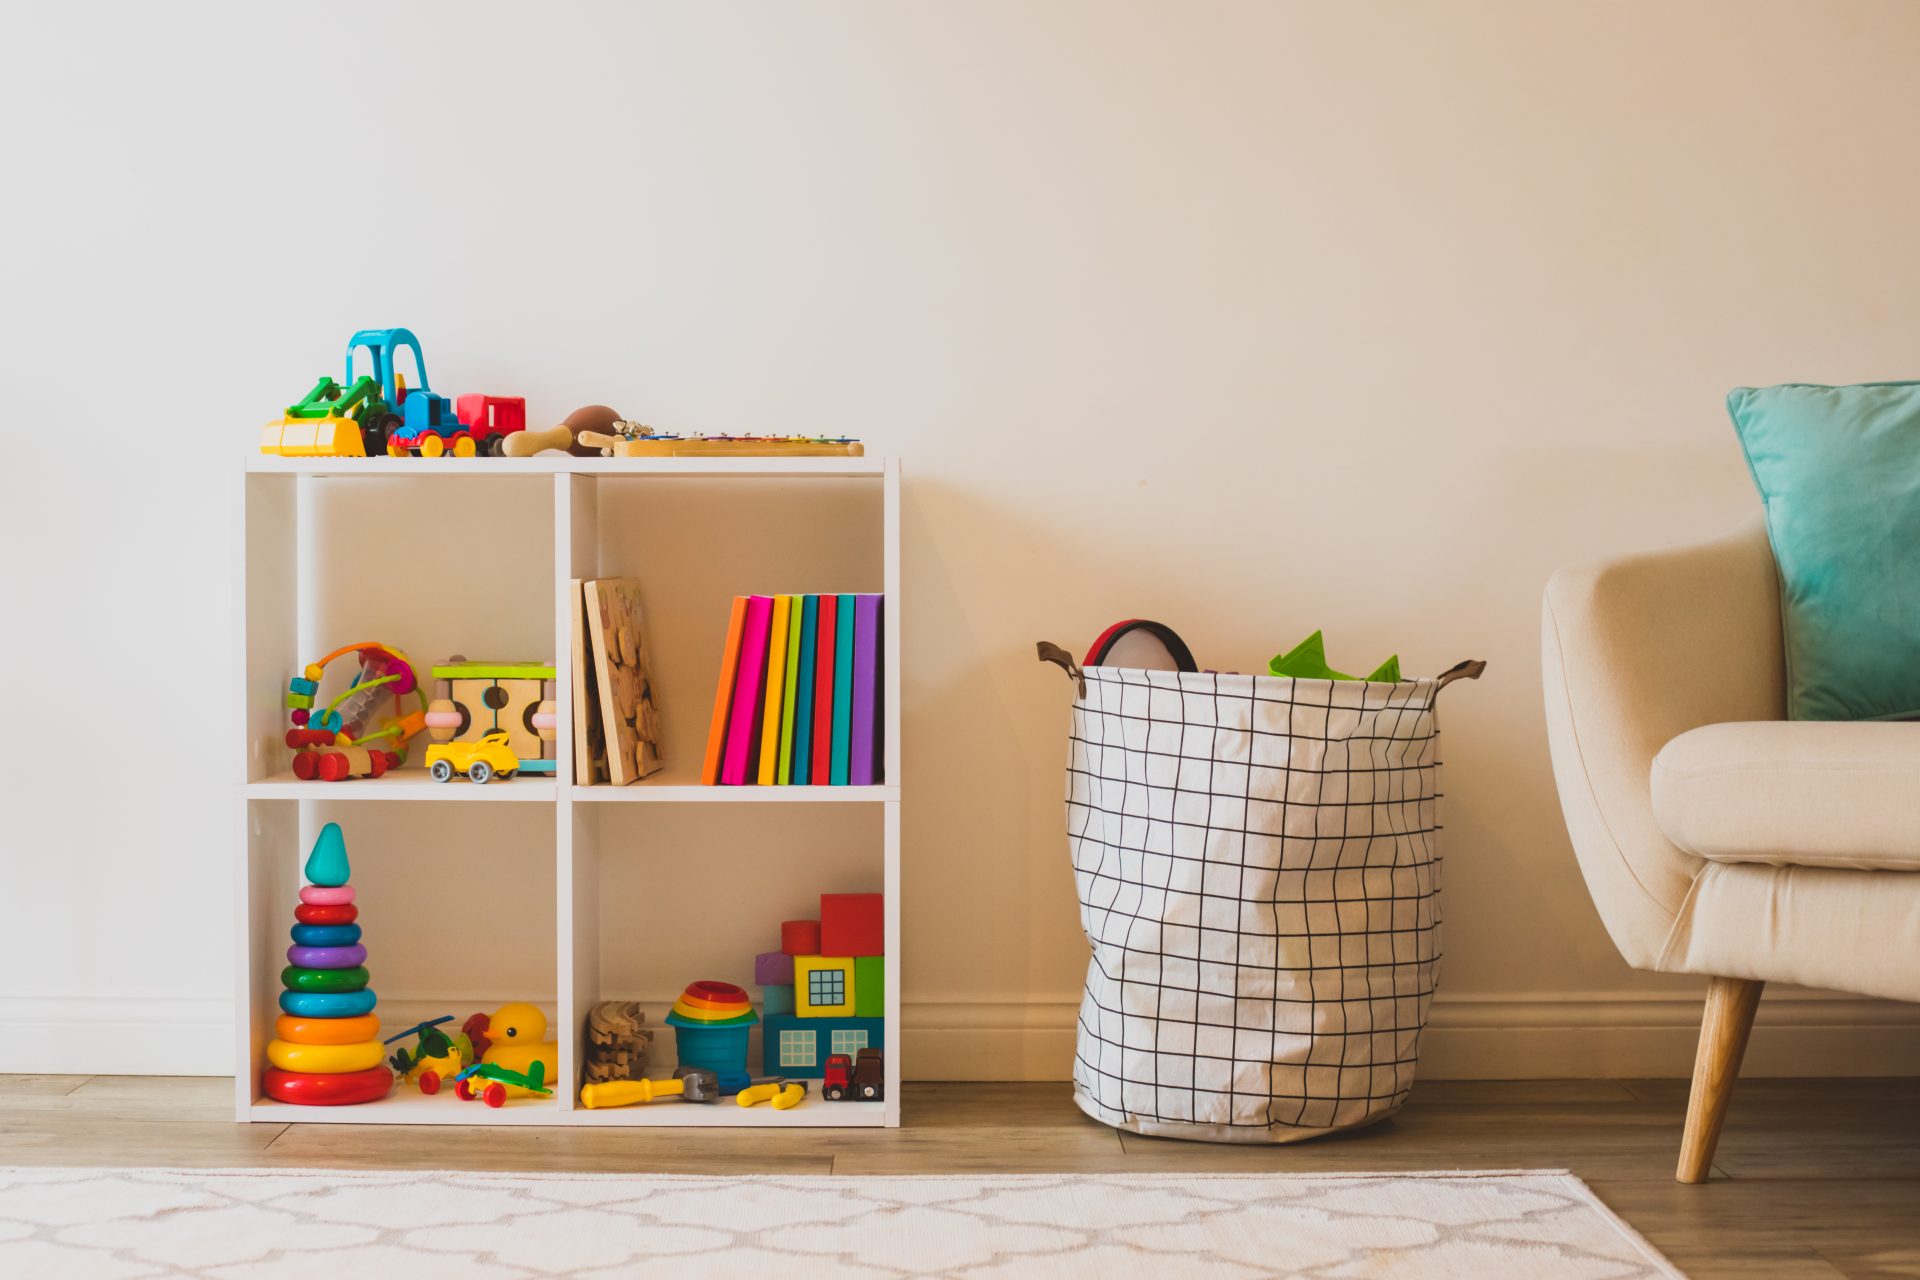 Ordnung im Kinderzimmer: Eine aufgeräumte Spielecke